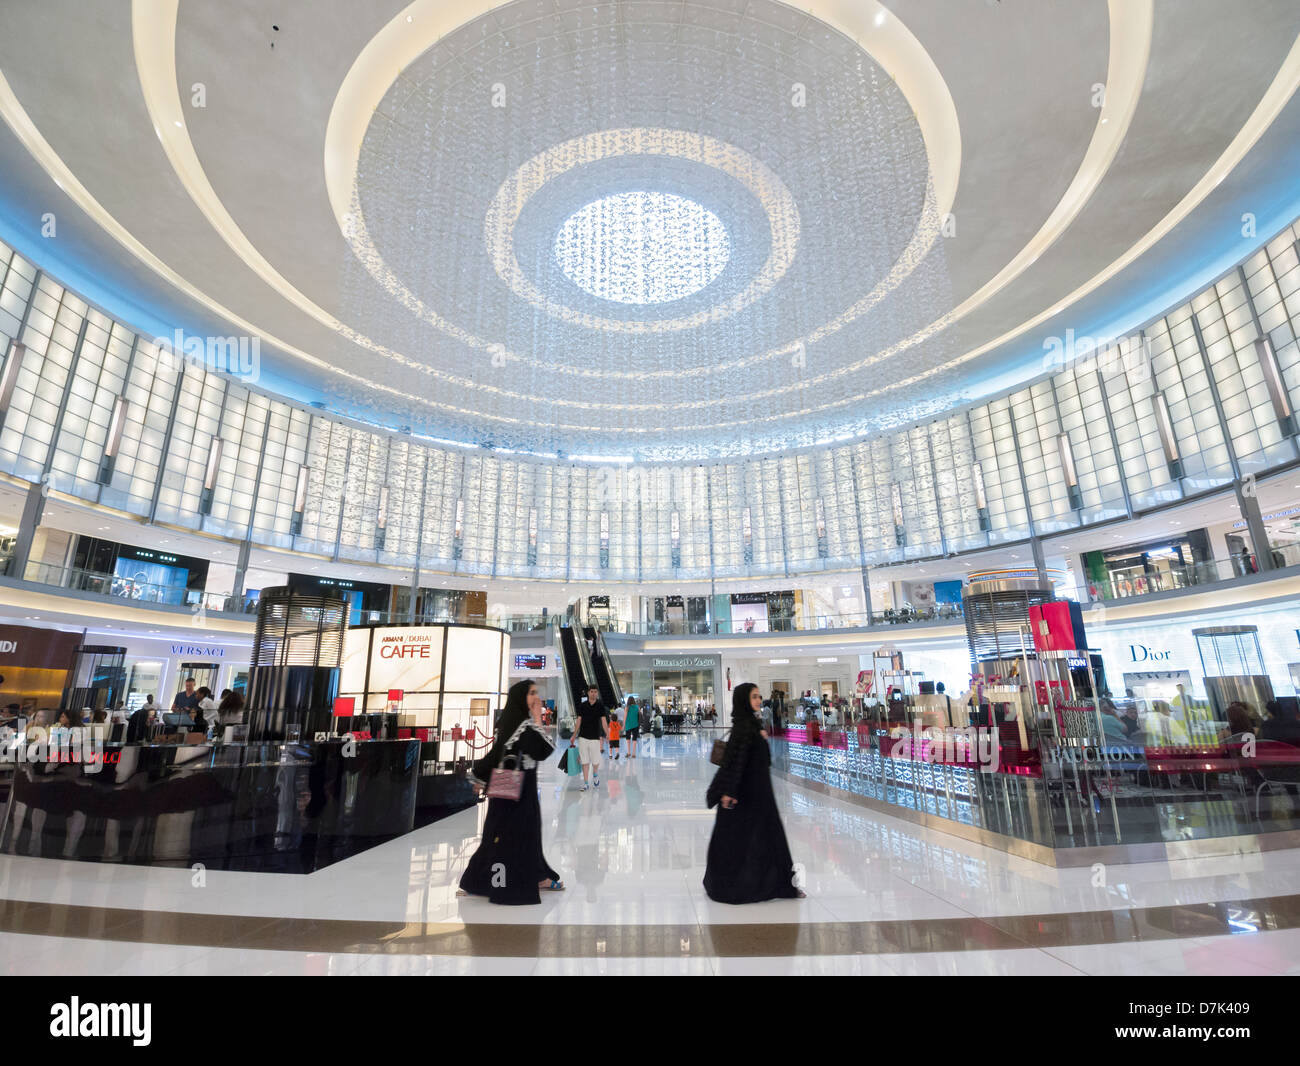 The Dubai Mall in Dubai United Arab Emirates Stock Photo